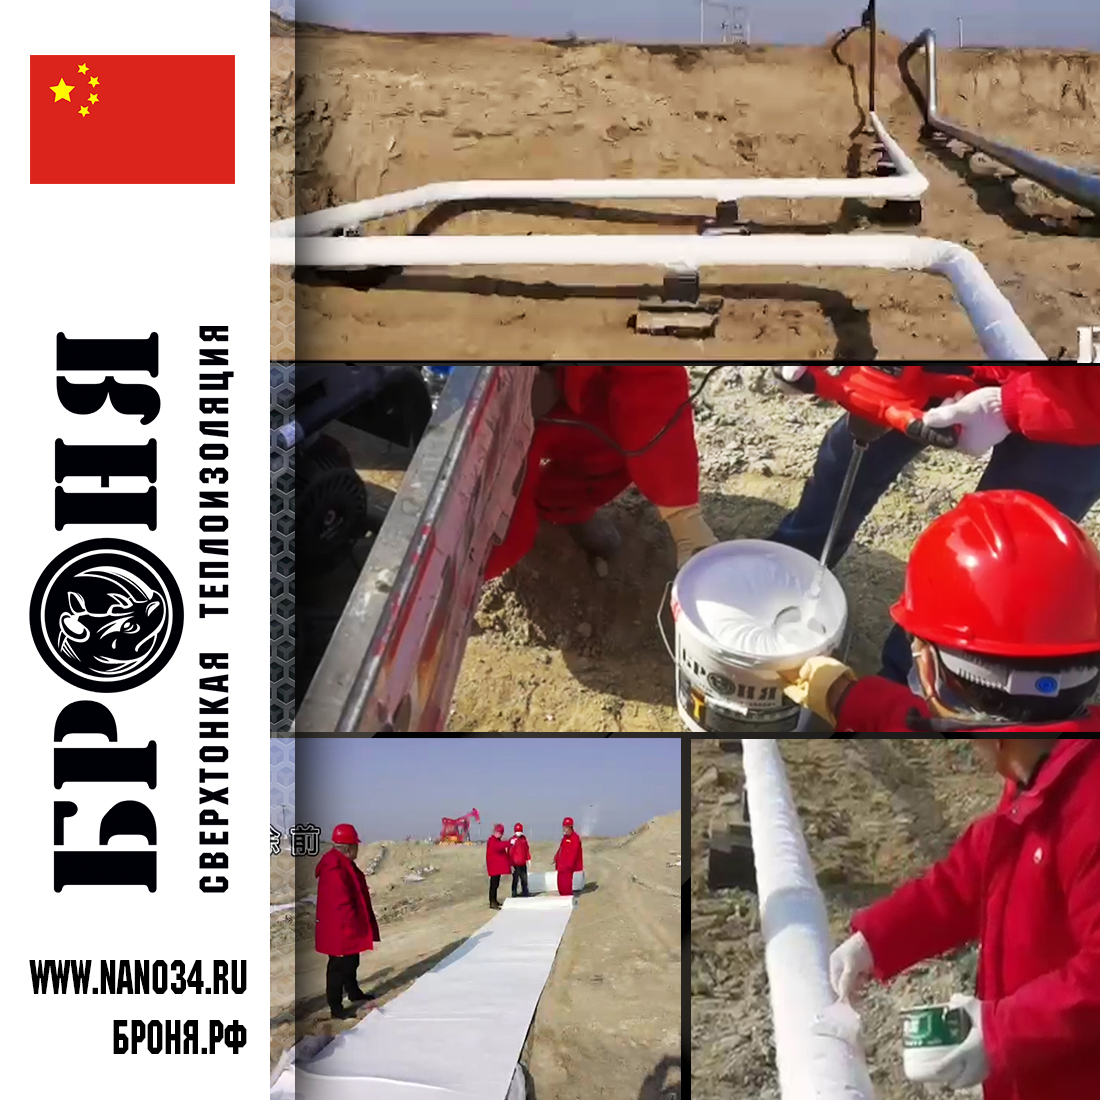 Старт глобального нанесения Броня Классик на трубопроводе Кламайского нефтяного месторождения Синдзян, Китай 